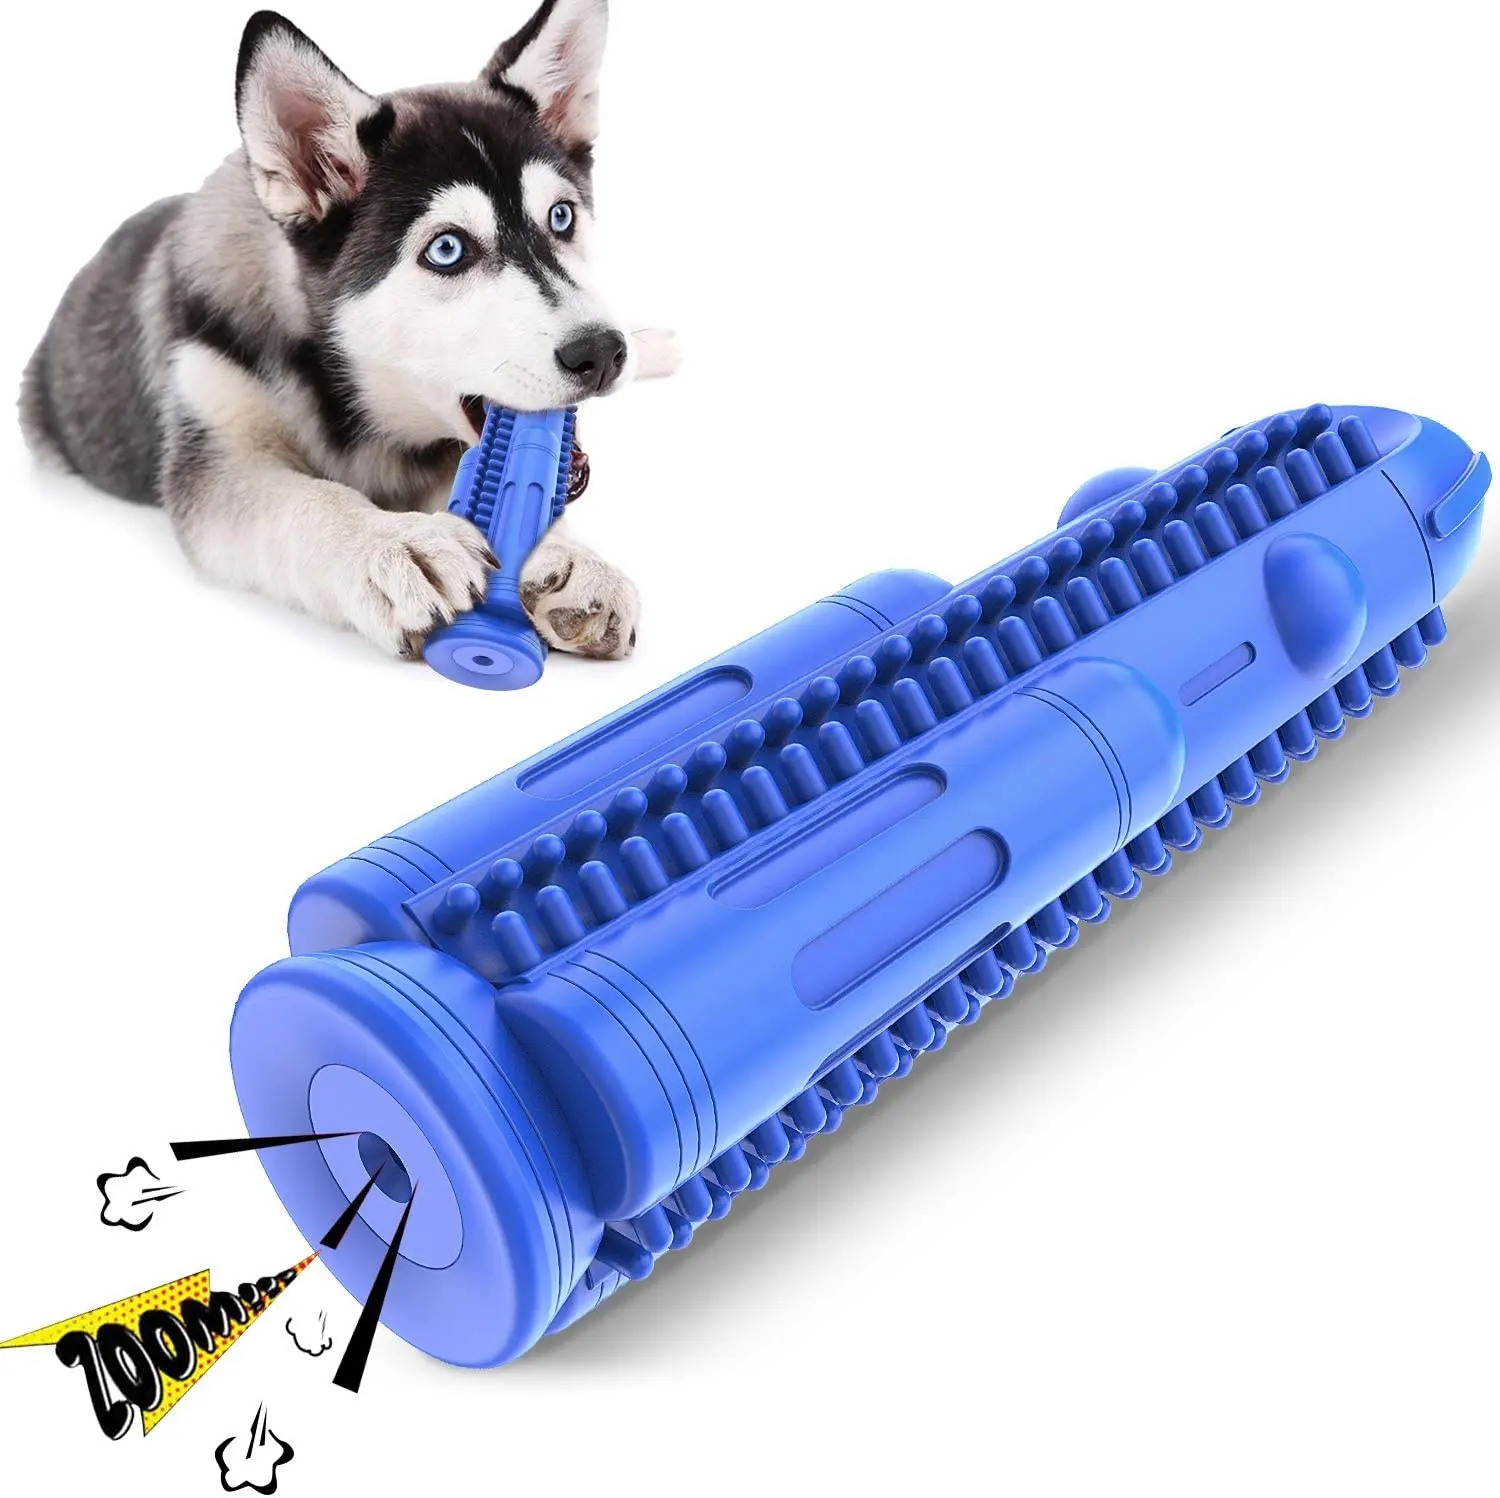 A-mazon Venda Quente Eco Friendly Indestrutível Foguete De Borracha Dog Squeaky Mastigar Brinquedos Para Agressivo Chewers